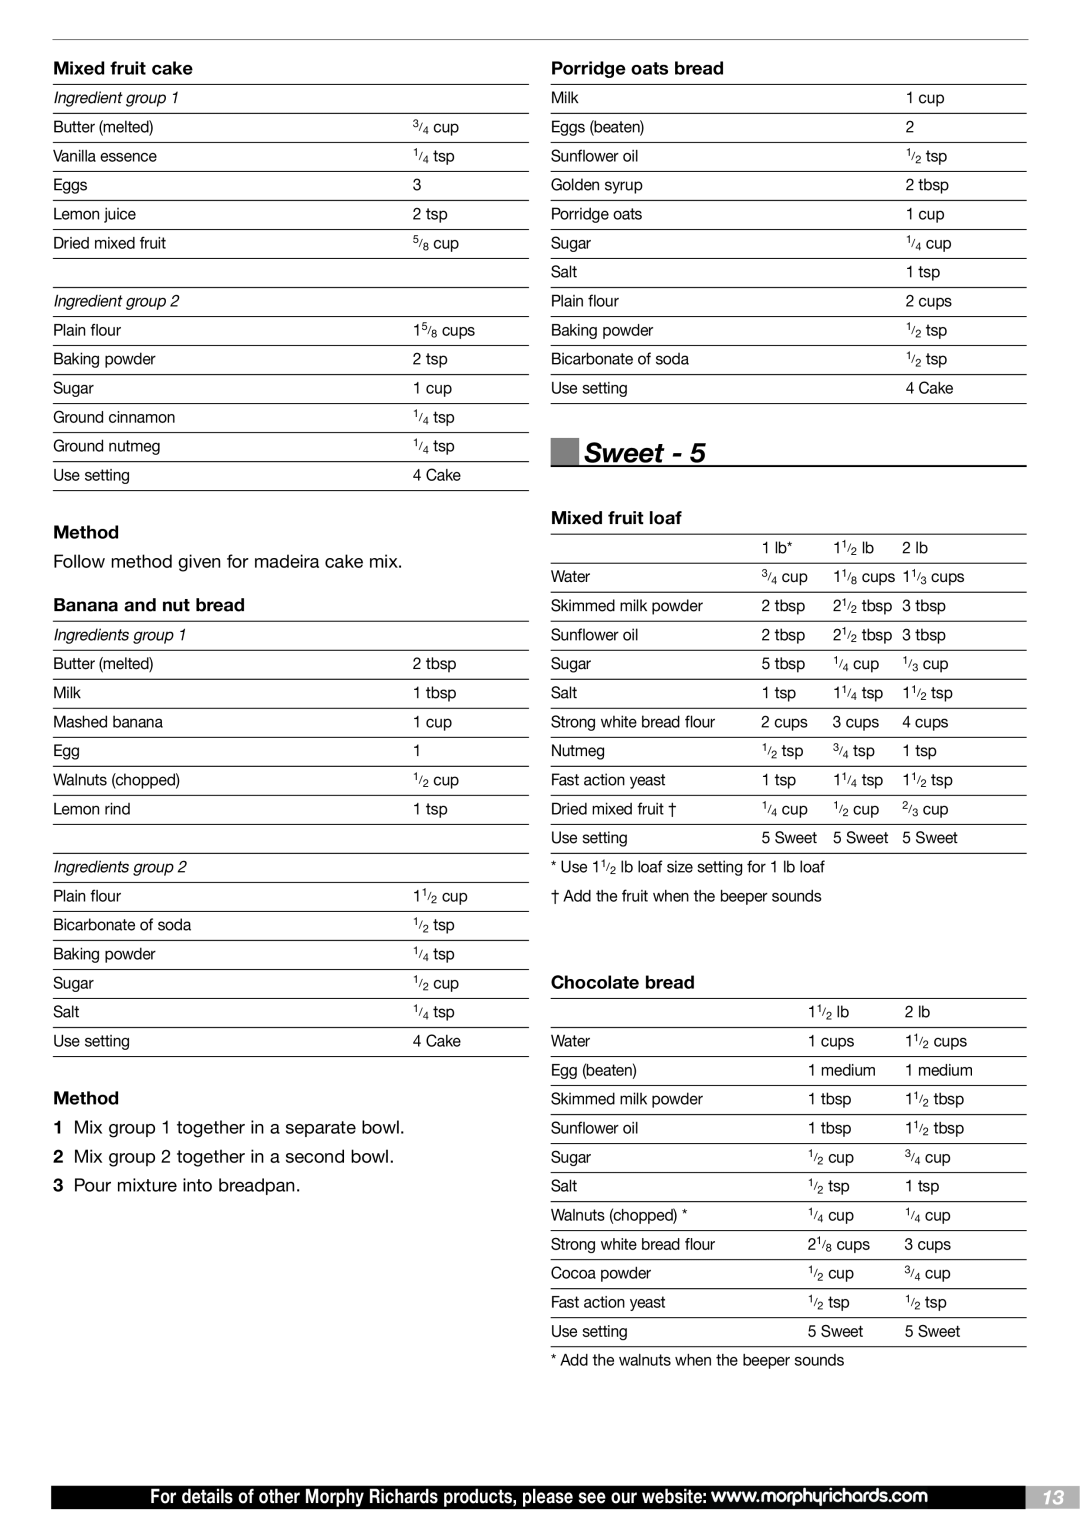 Morphy Richards BM48268 MUK Rev4 manual Sweet, Ingredient group, Ingredients group 